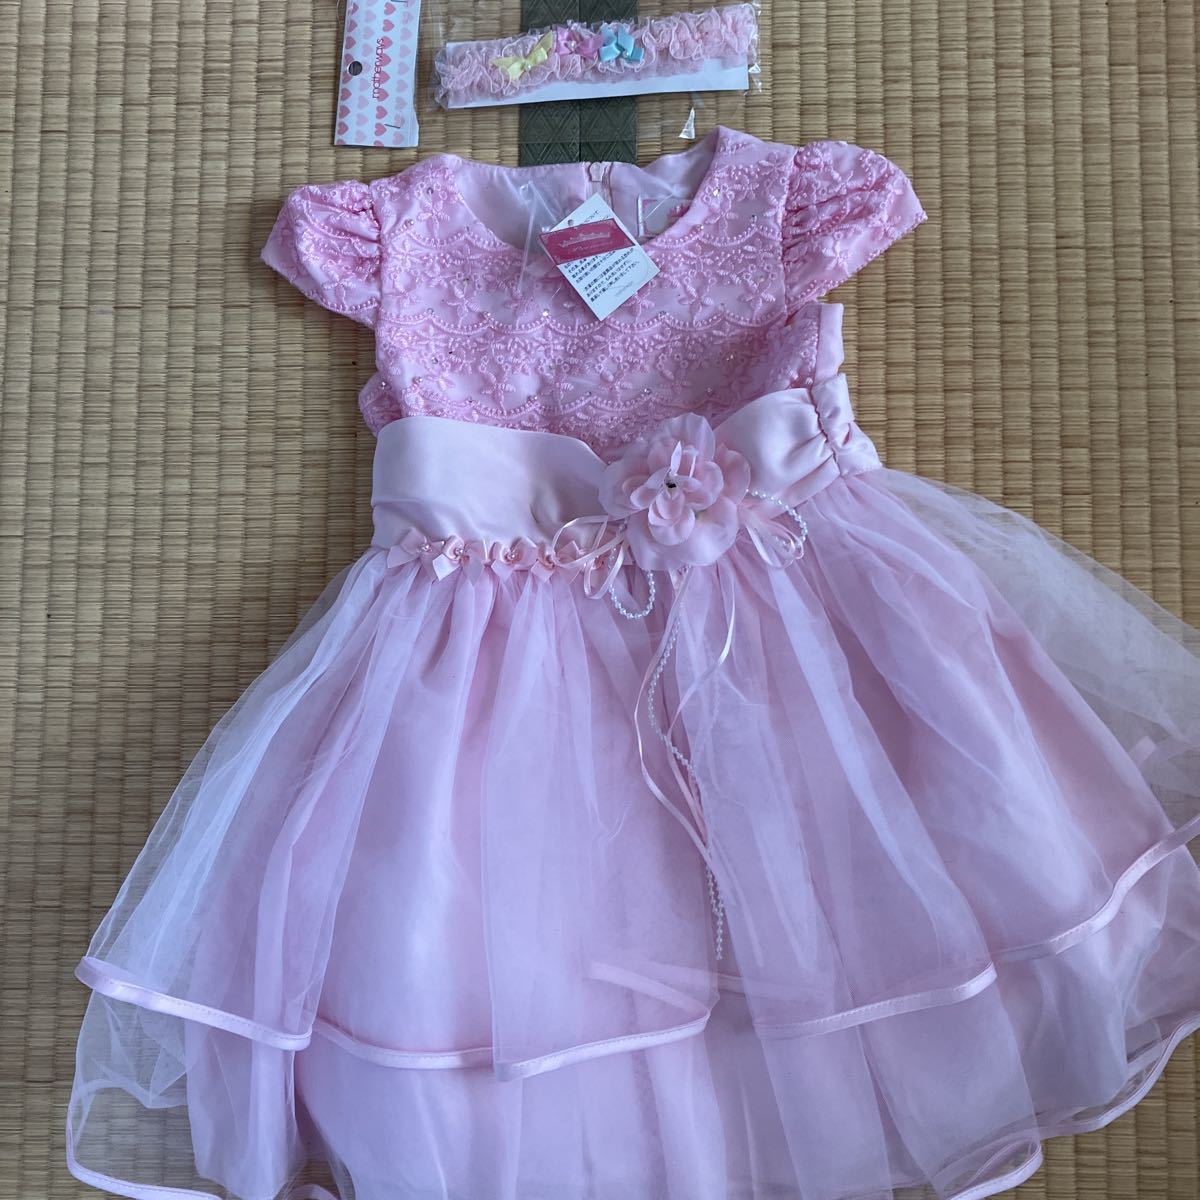  Princess child dress 